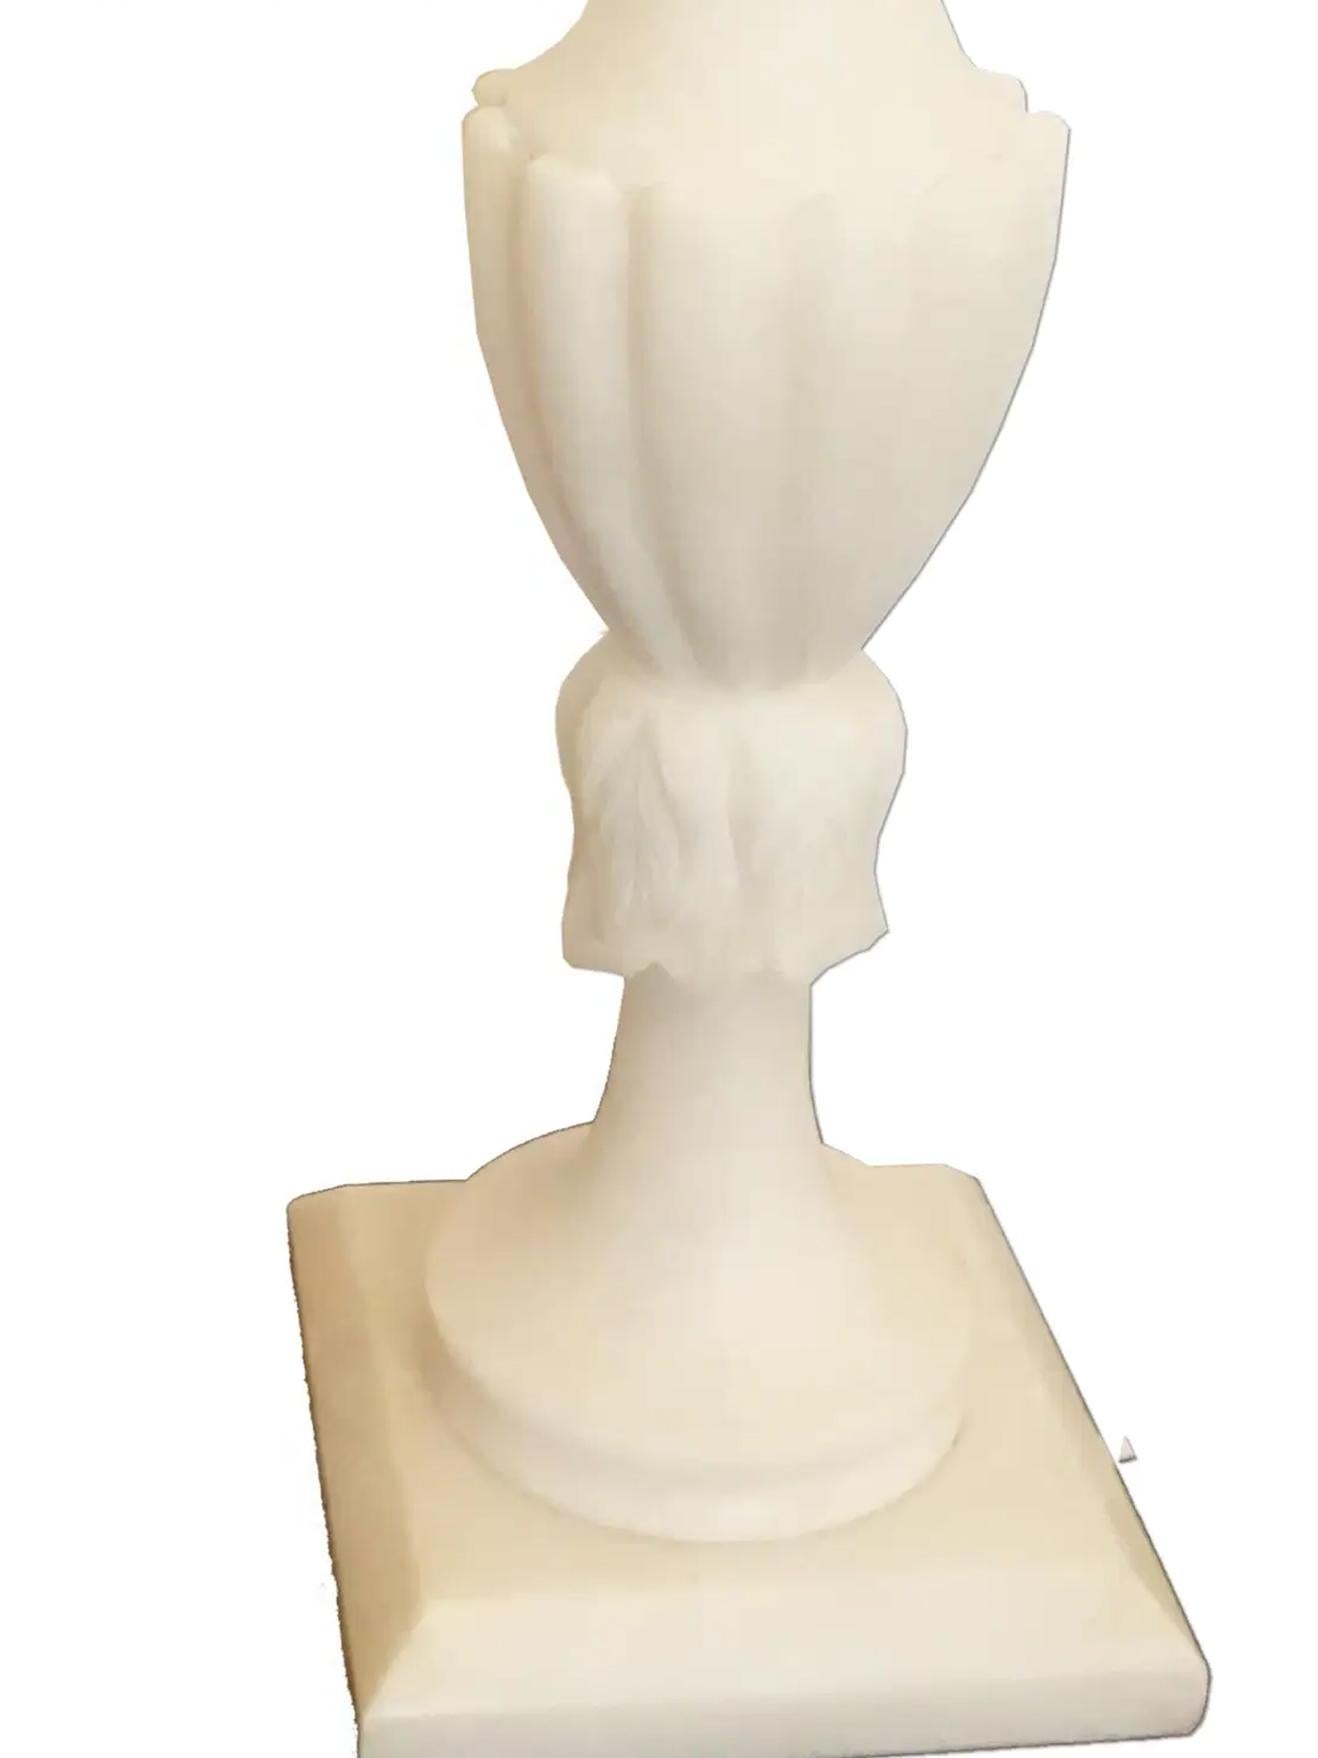 Lampes précieuses en albâtre ou en marbre staturium, il est difficile de distinguer
Ce sont des lampes hautes, stylisées et élégantes.
 Ils sont très bien faits et sont en parfait état.
En raison de leur taille, ces lampes sont parfaites pour